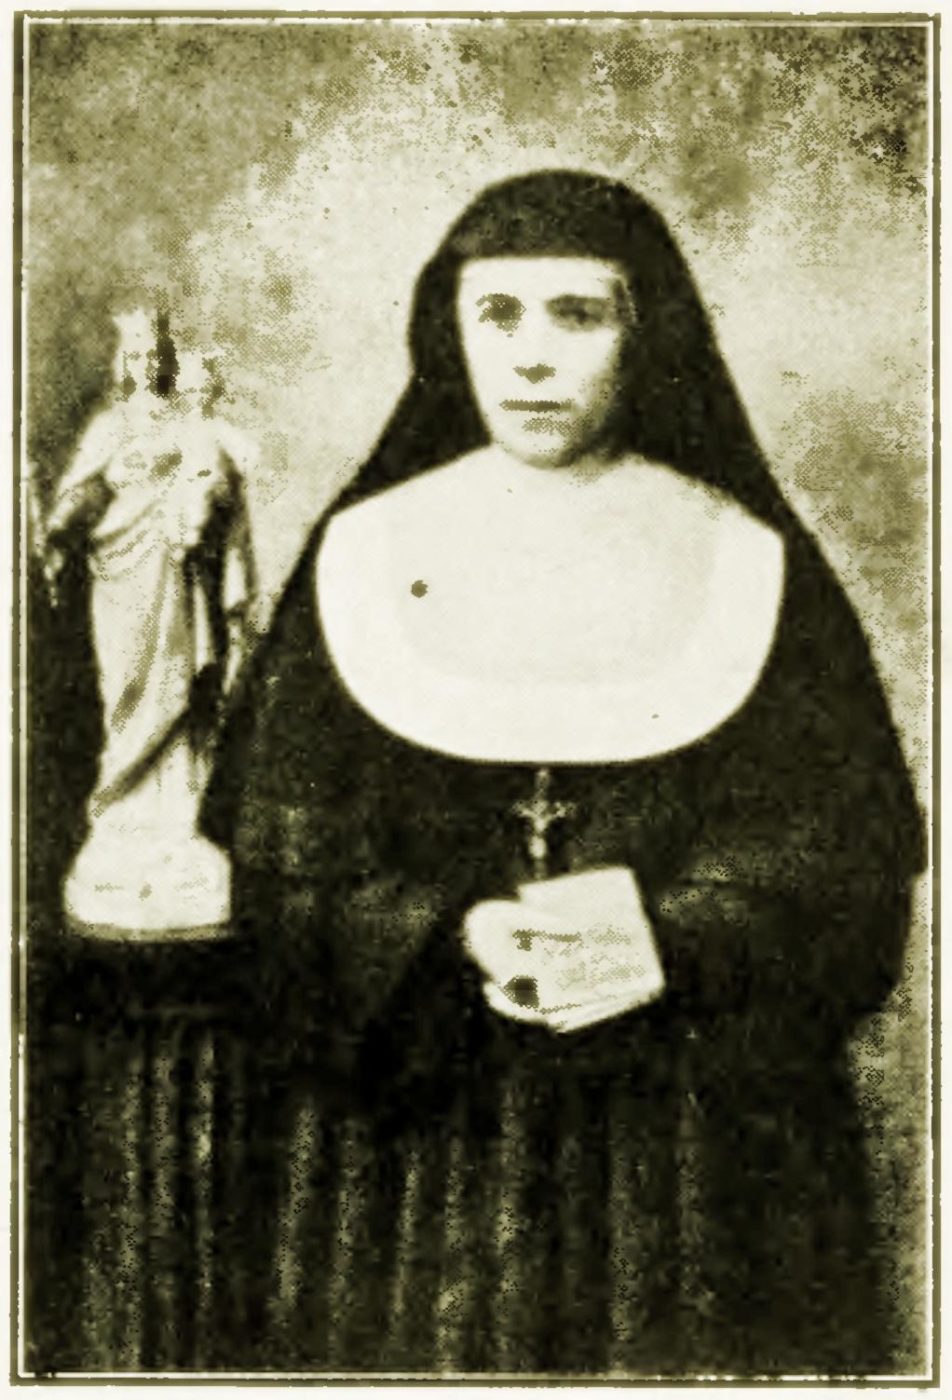 St Mary Mazzarello